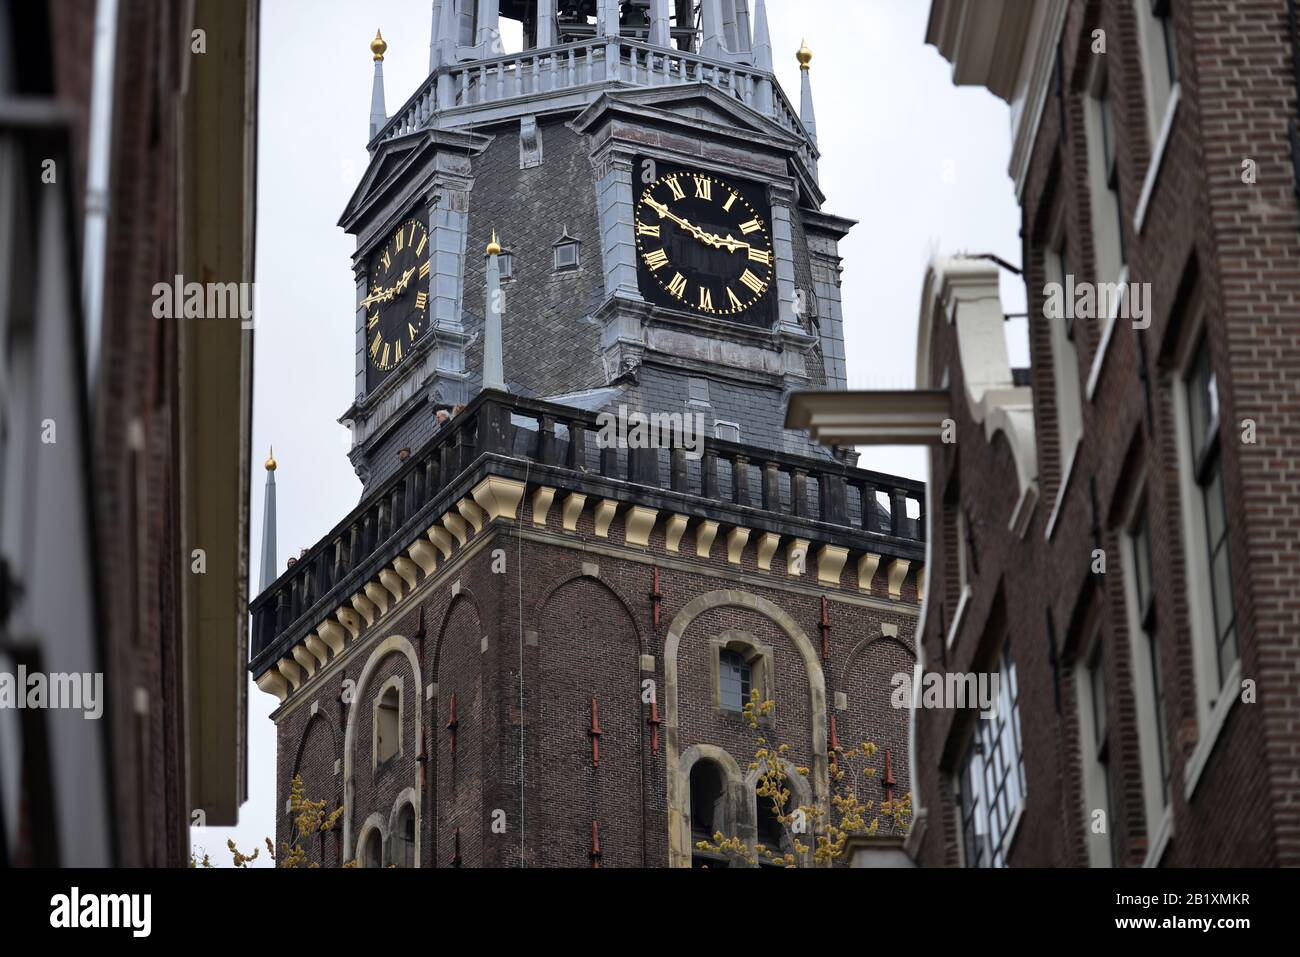 Oude Kerk, Oudekerksplein, Amsterdam, Niederlande Banque D'Images